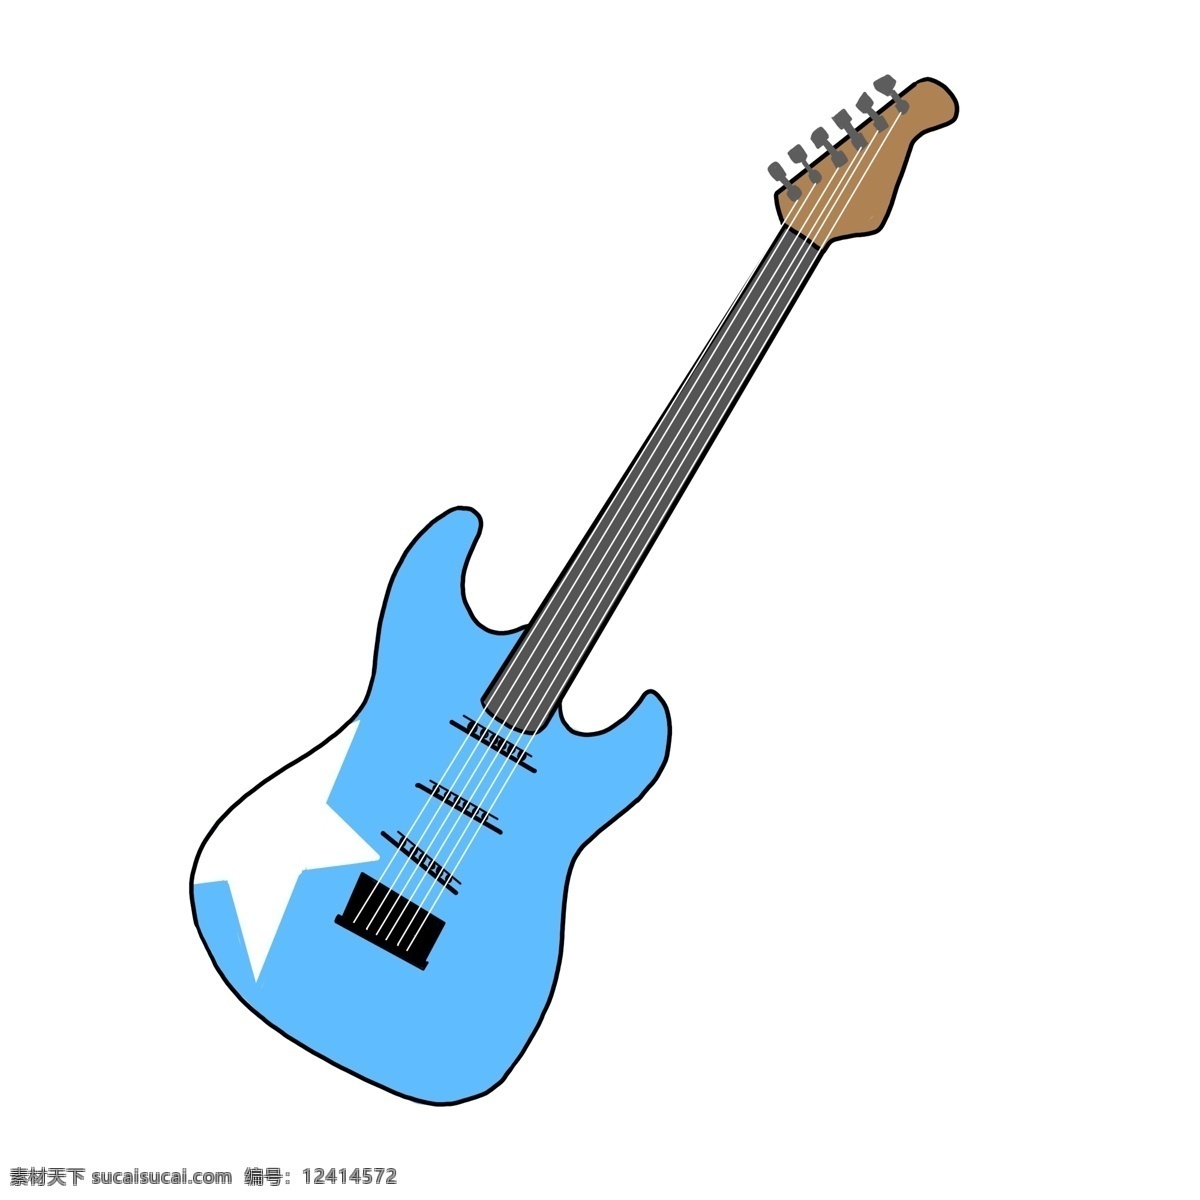 蓝色 贝斯 乐器 插画 吉他 古典乐器 音律音乐 演奏音乐 乐器插画 蓝色贝斯 蓝色吉他贝斯